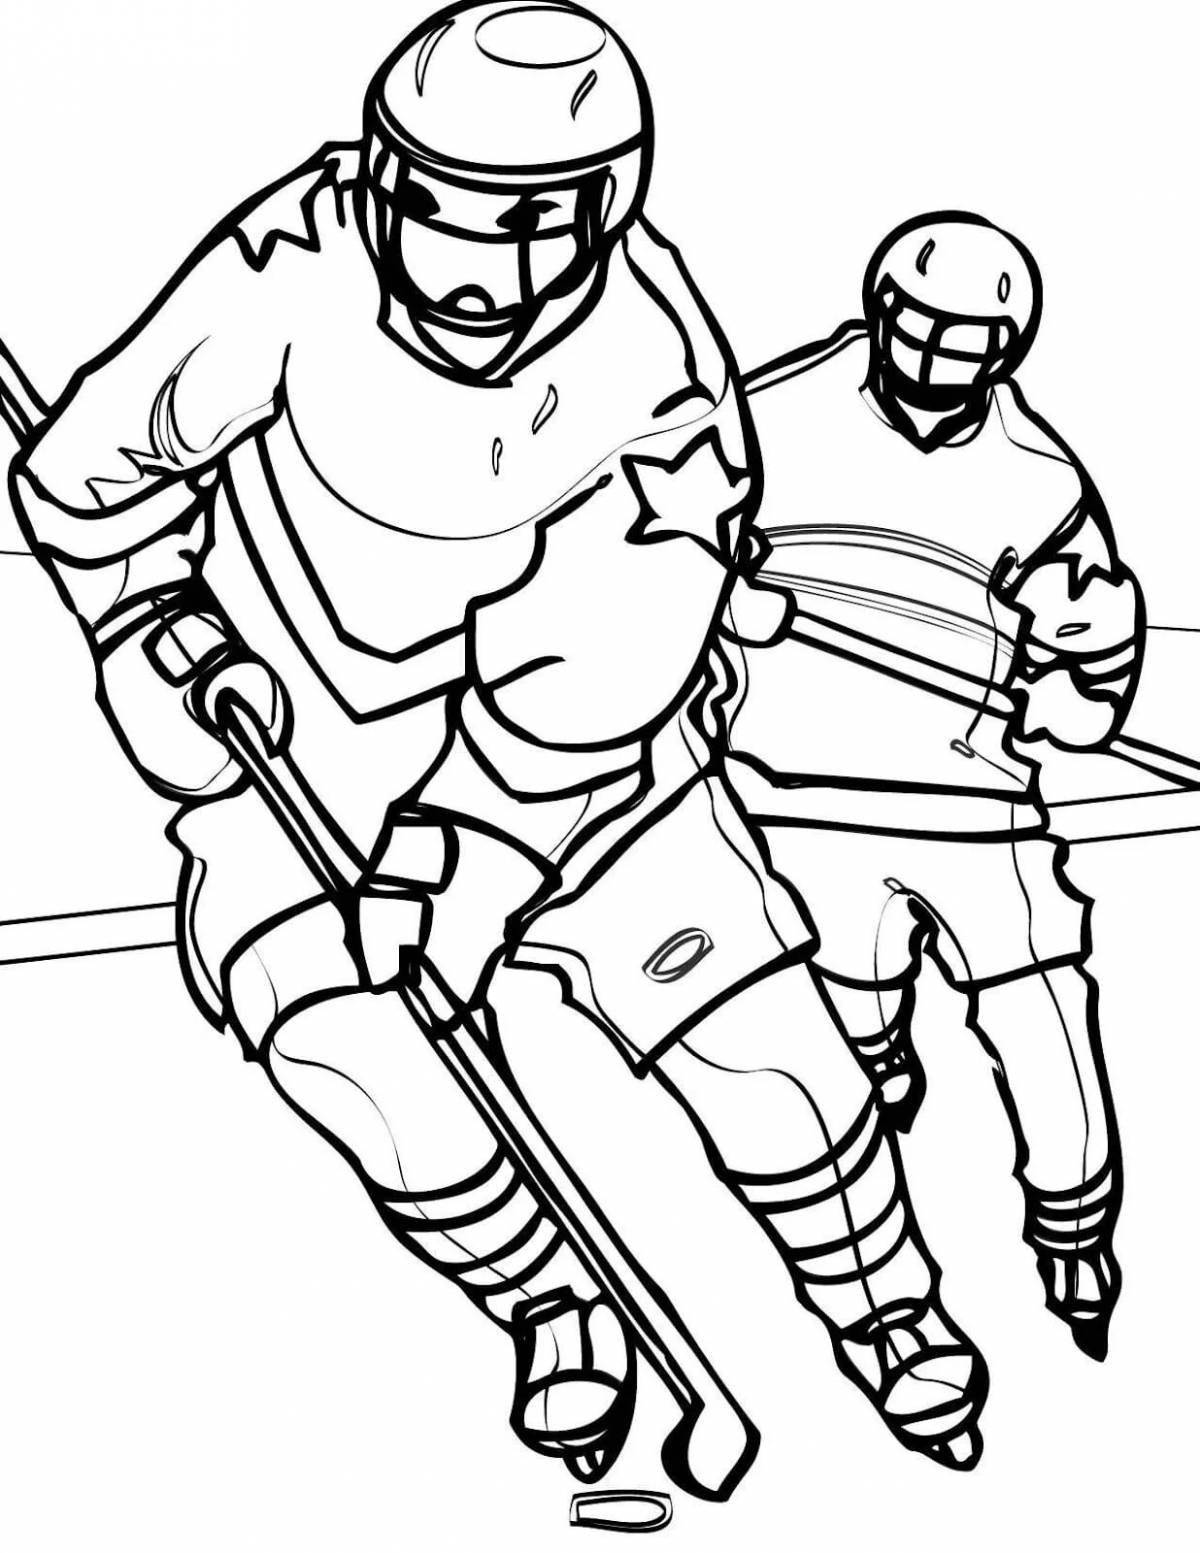 Hockey #3